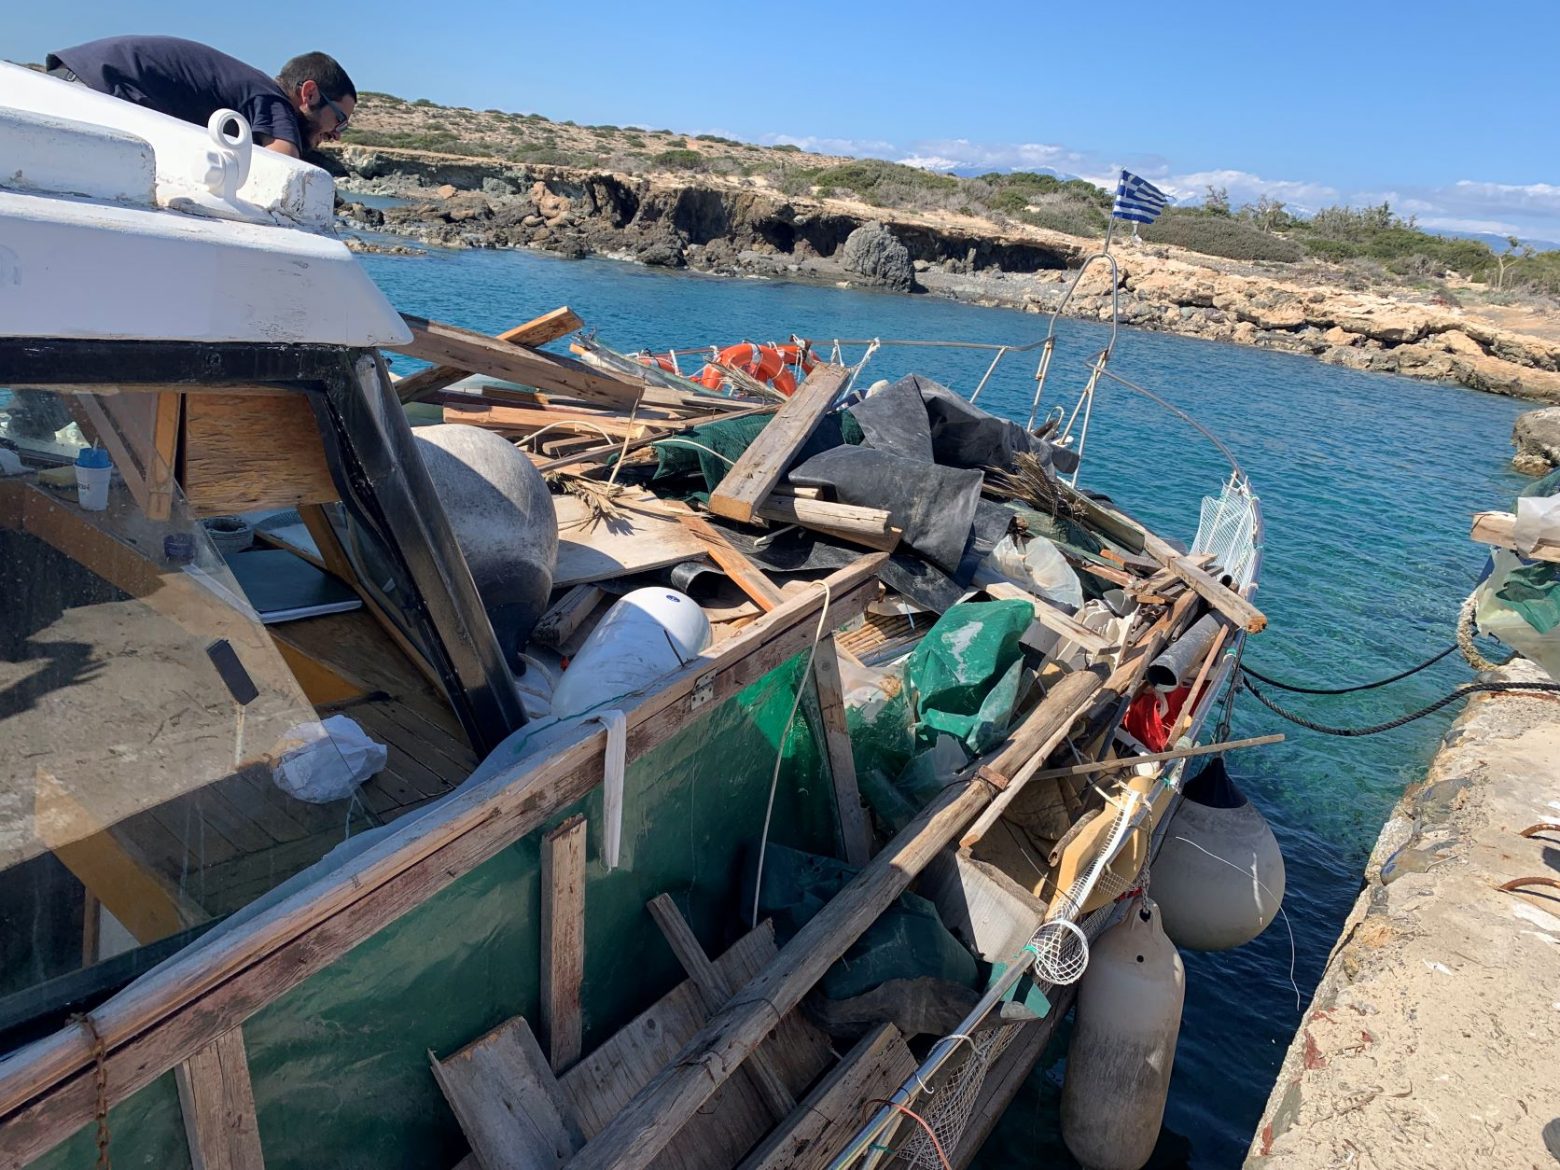 Δήμος Ιεράπετρας: Υπάρχουν προϊόντα κατεδάφισης στη Νήσο Χρυσή που πρέπει να απομακρυνθούν